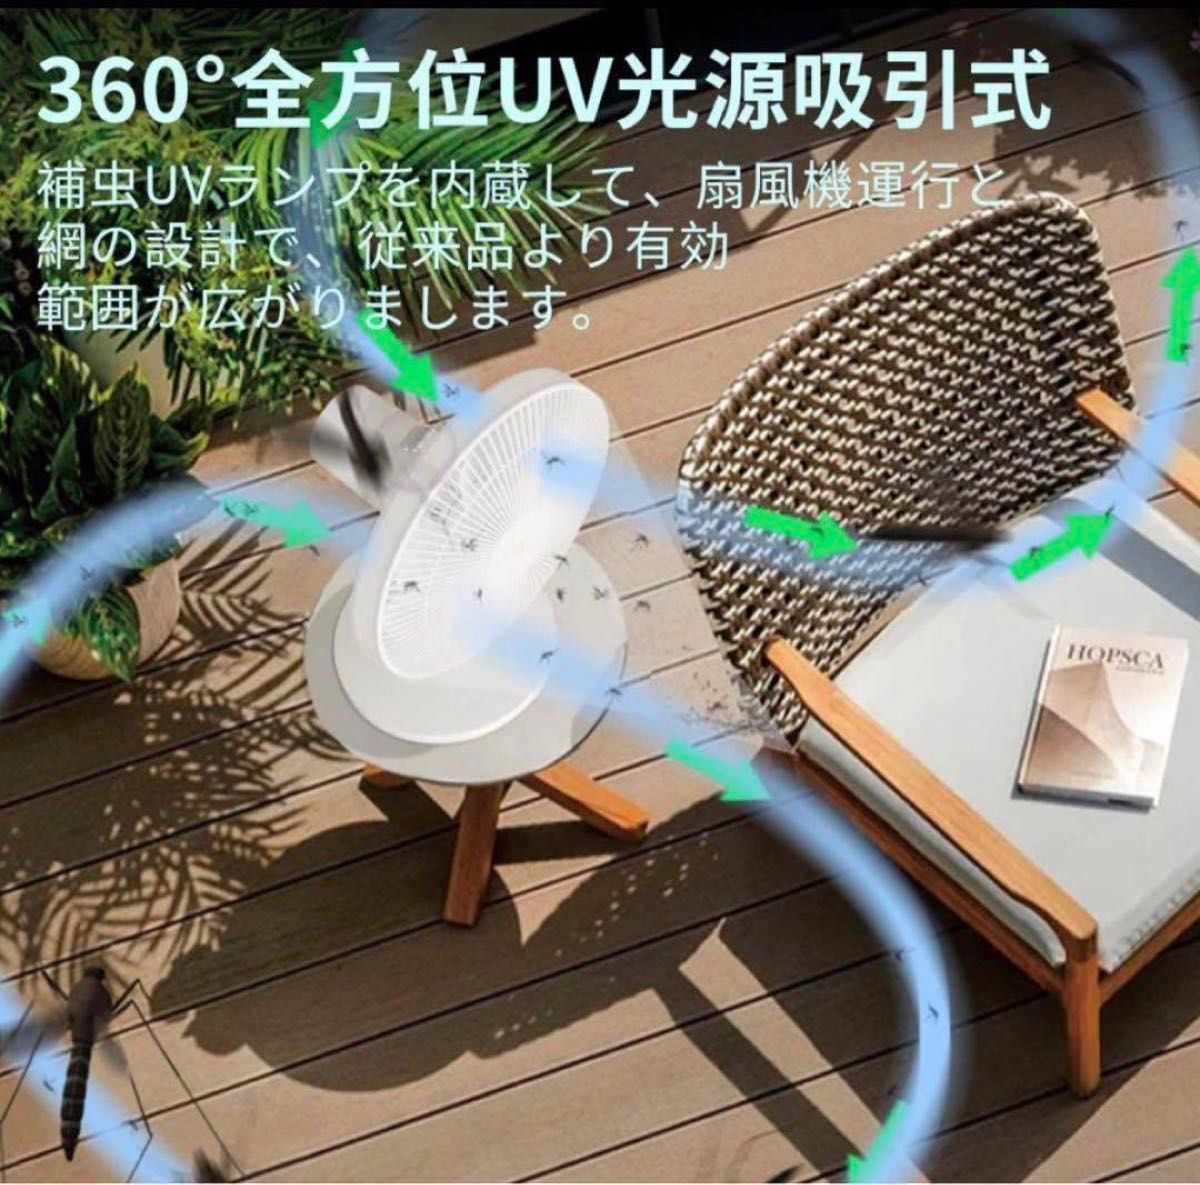 蚊帳 捕虫器 コバエ取り機 駆除 UV光源吸引式 ハエ 蚊とり網